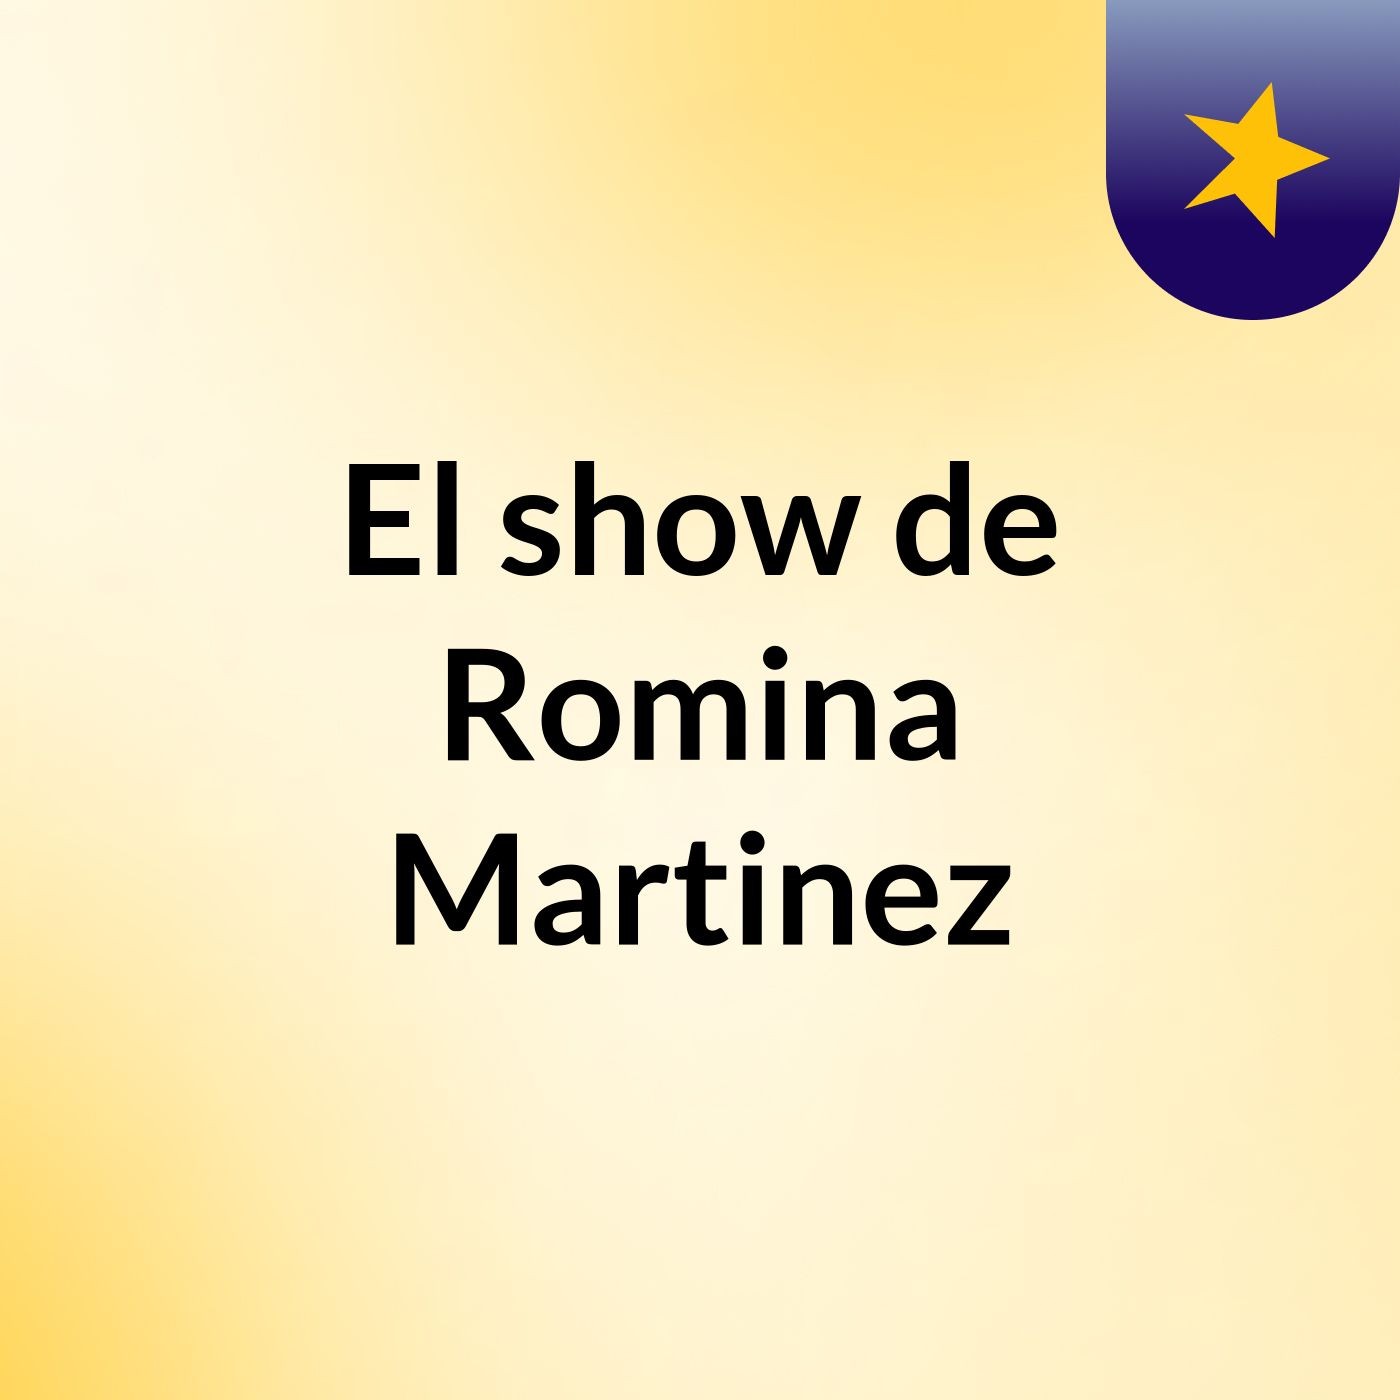 El show de Romina Martinez